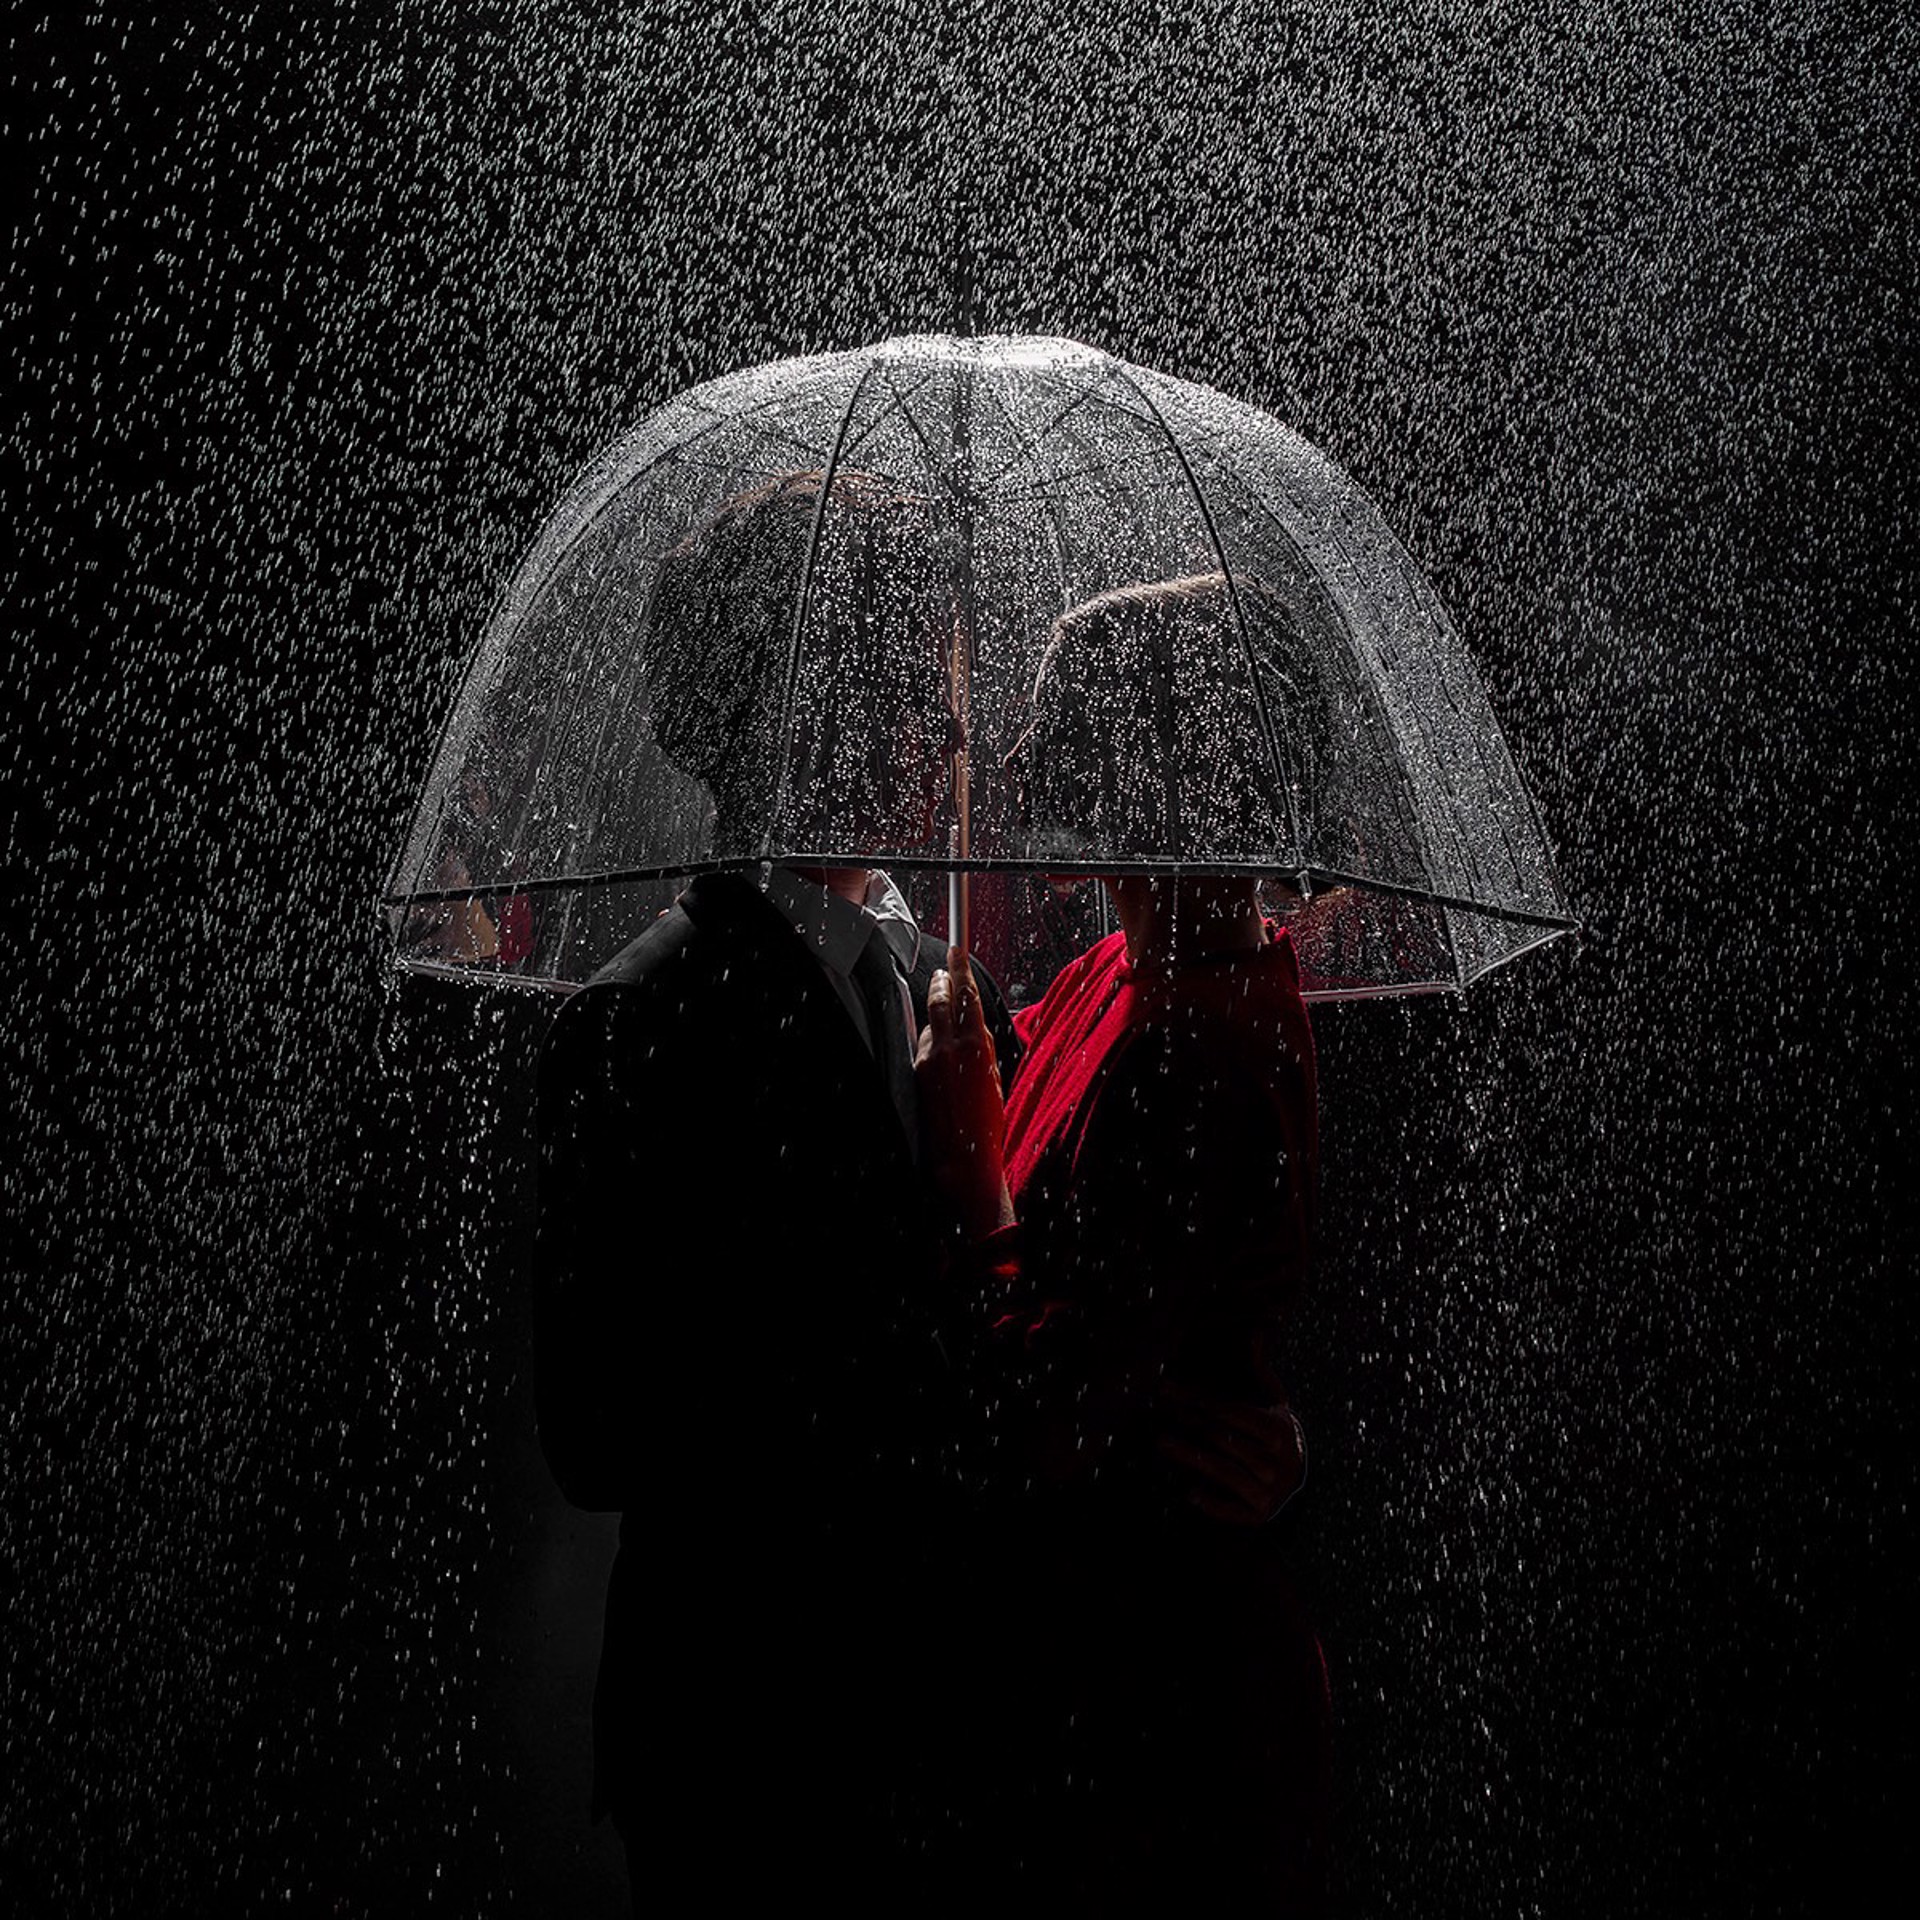 Under the Rain (AP2) by Tyler Shields